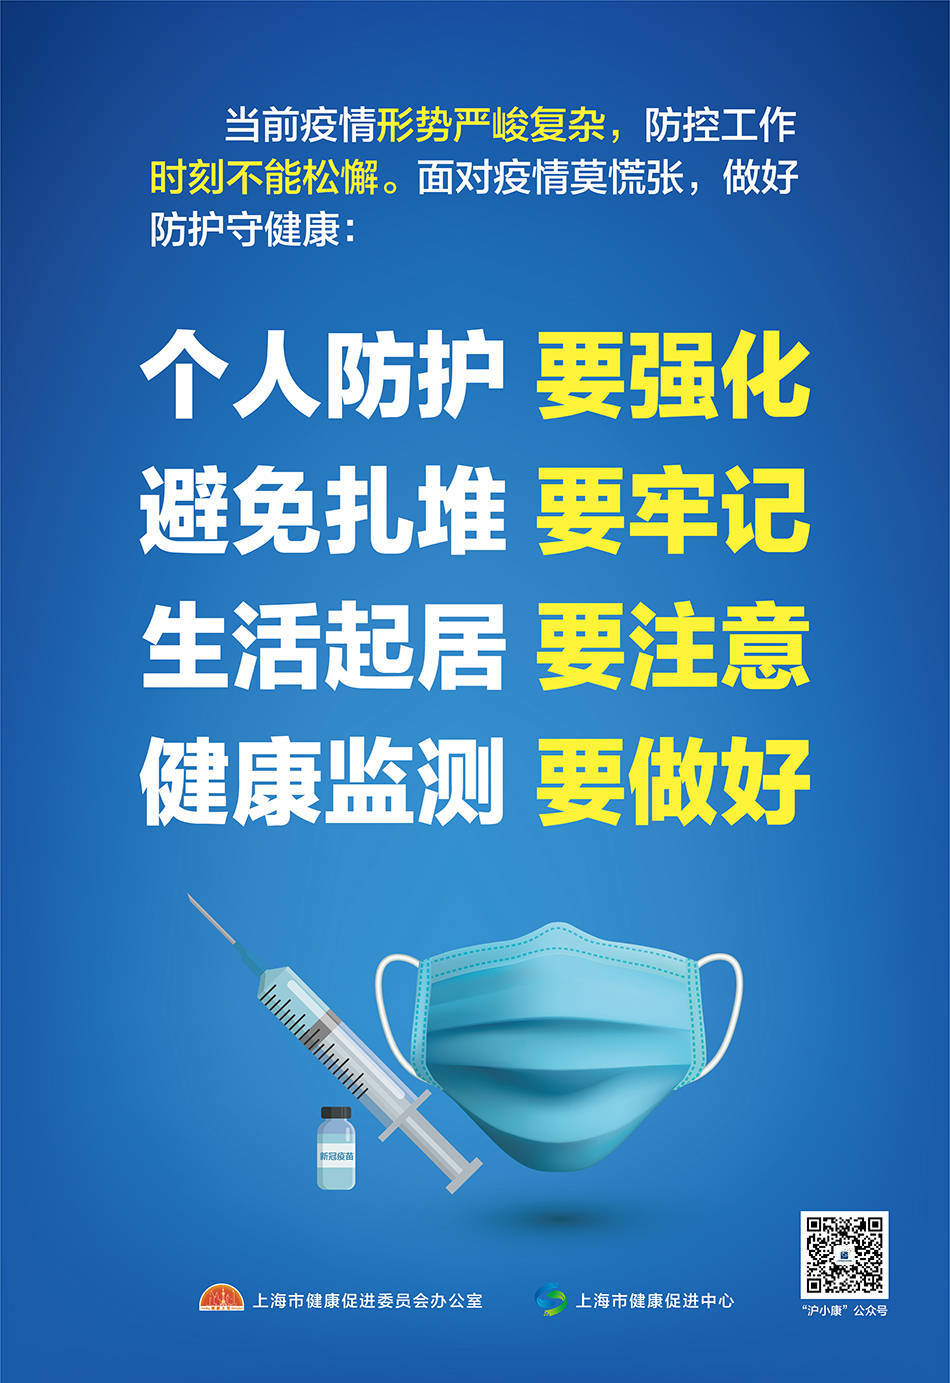 疫情|上海市健康促进中心提醒：面对疫情莫慌张，做好防护守健康